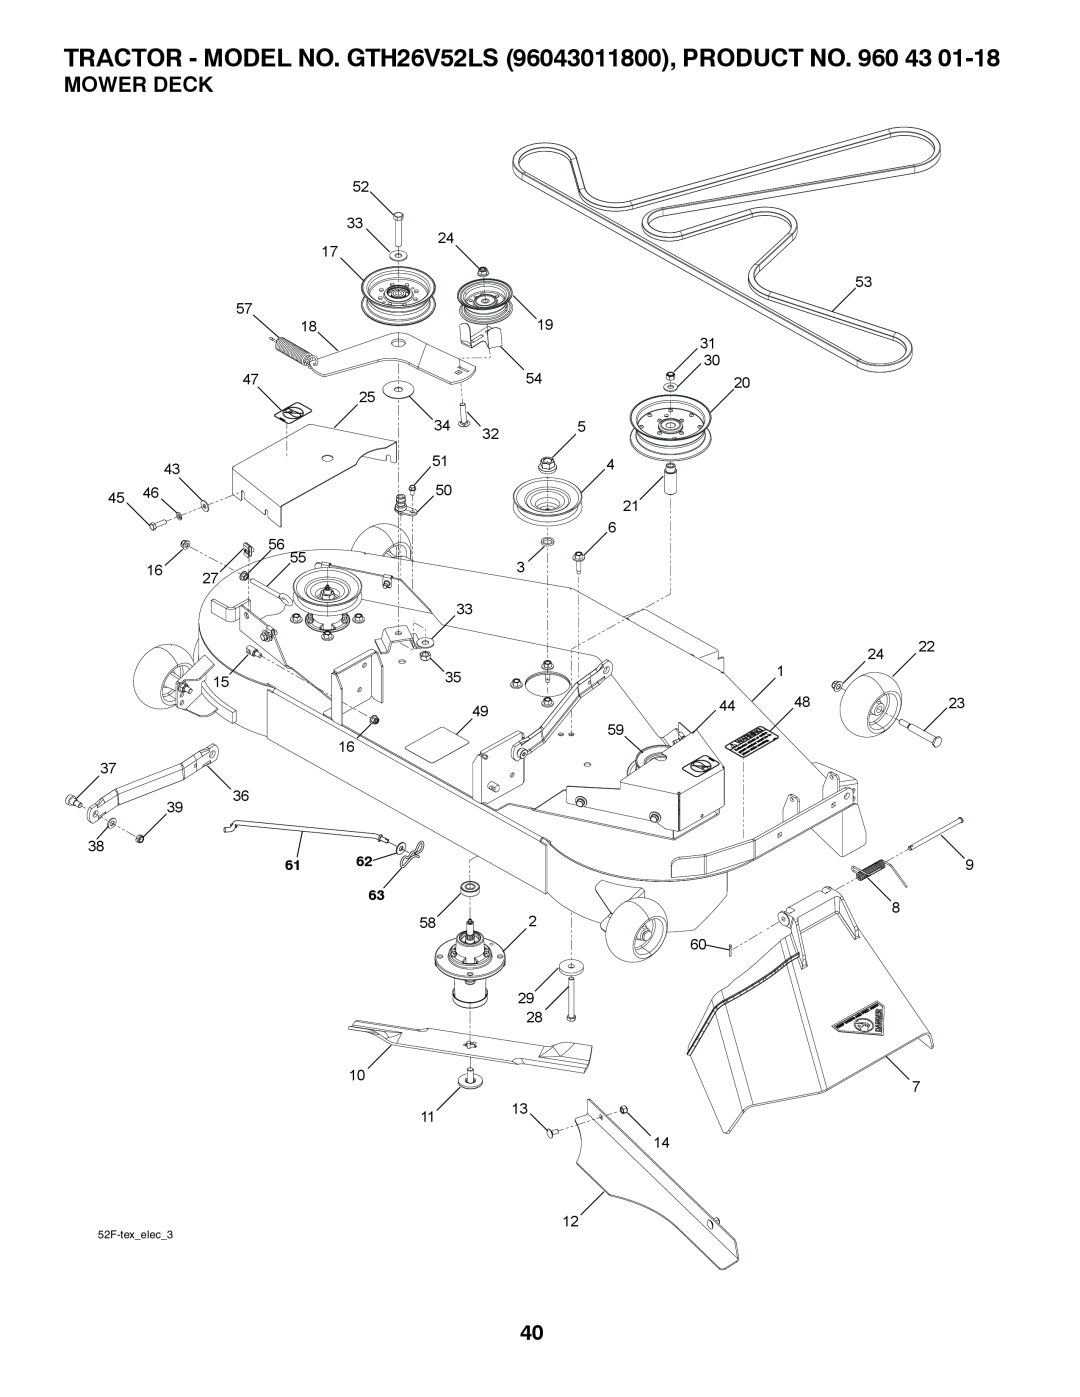 Husqvarna owner manual Mower Deck, TRACTOR - MODEL NO. GTH26V52LS 96043011800, PRODUCT NO. 960 43, 52F-texelec3 